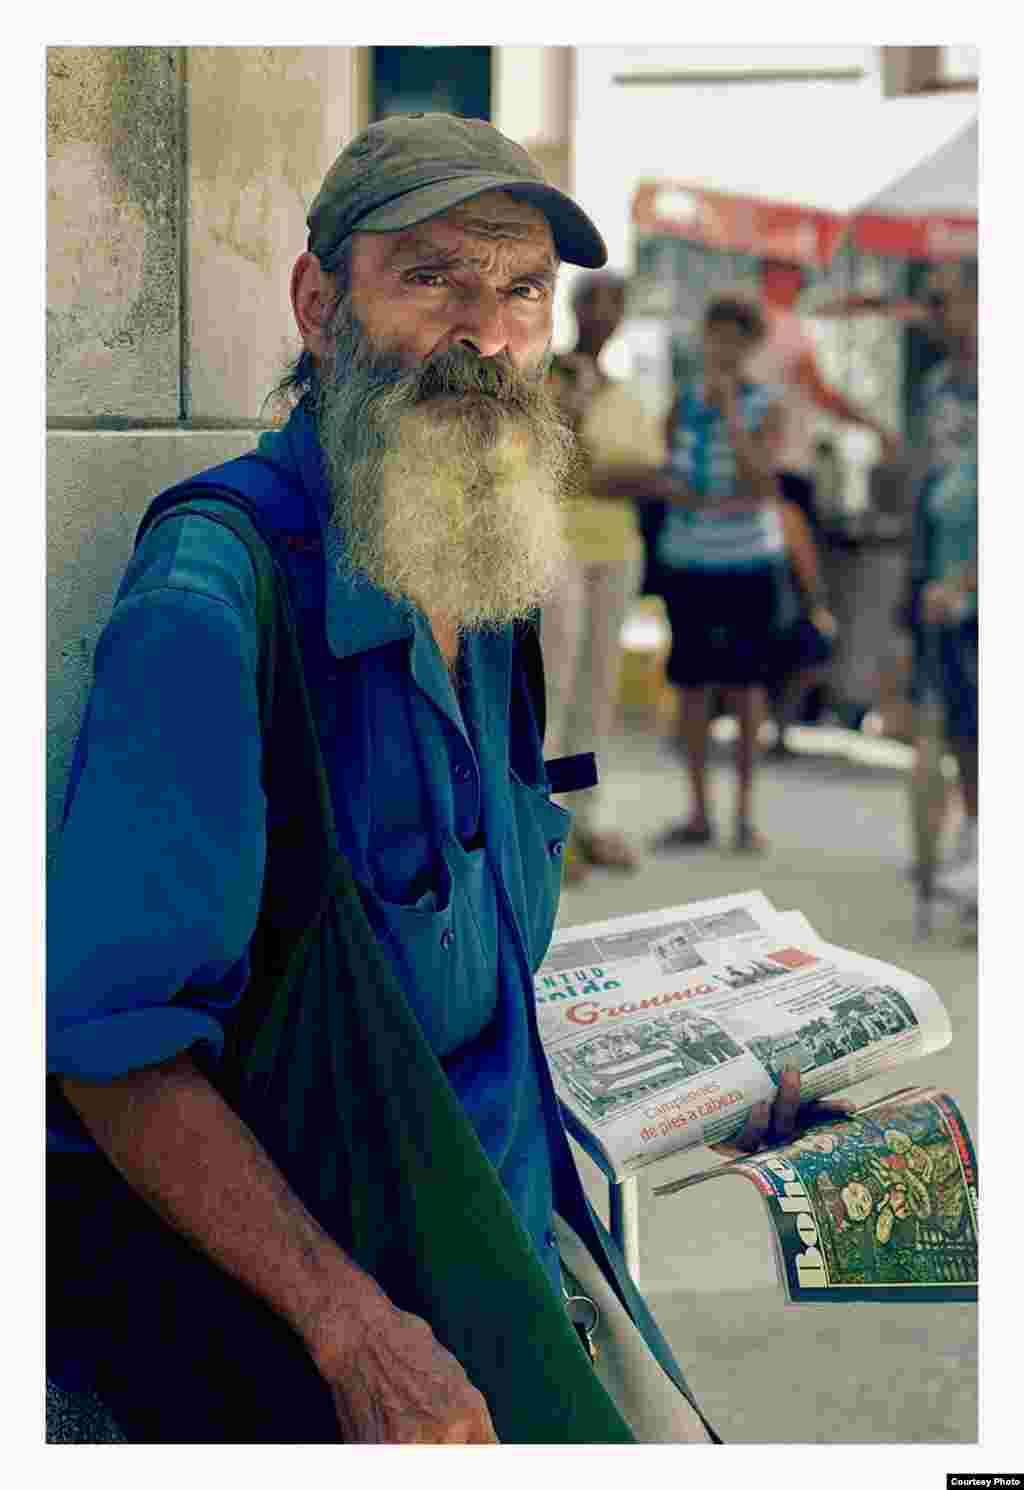 Gentes, La Habana, Cuba. Cortesía de CubaRaw.